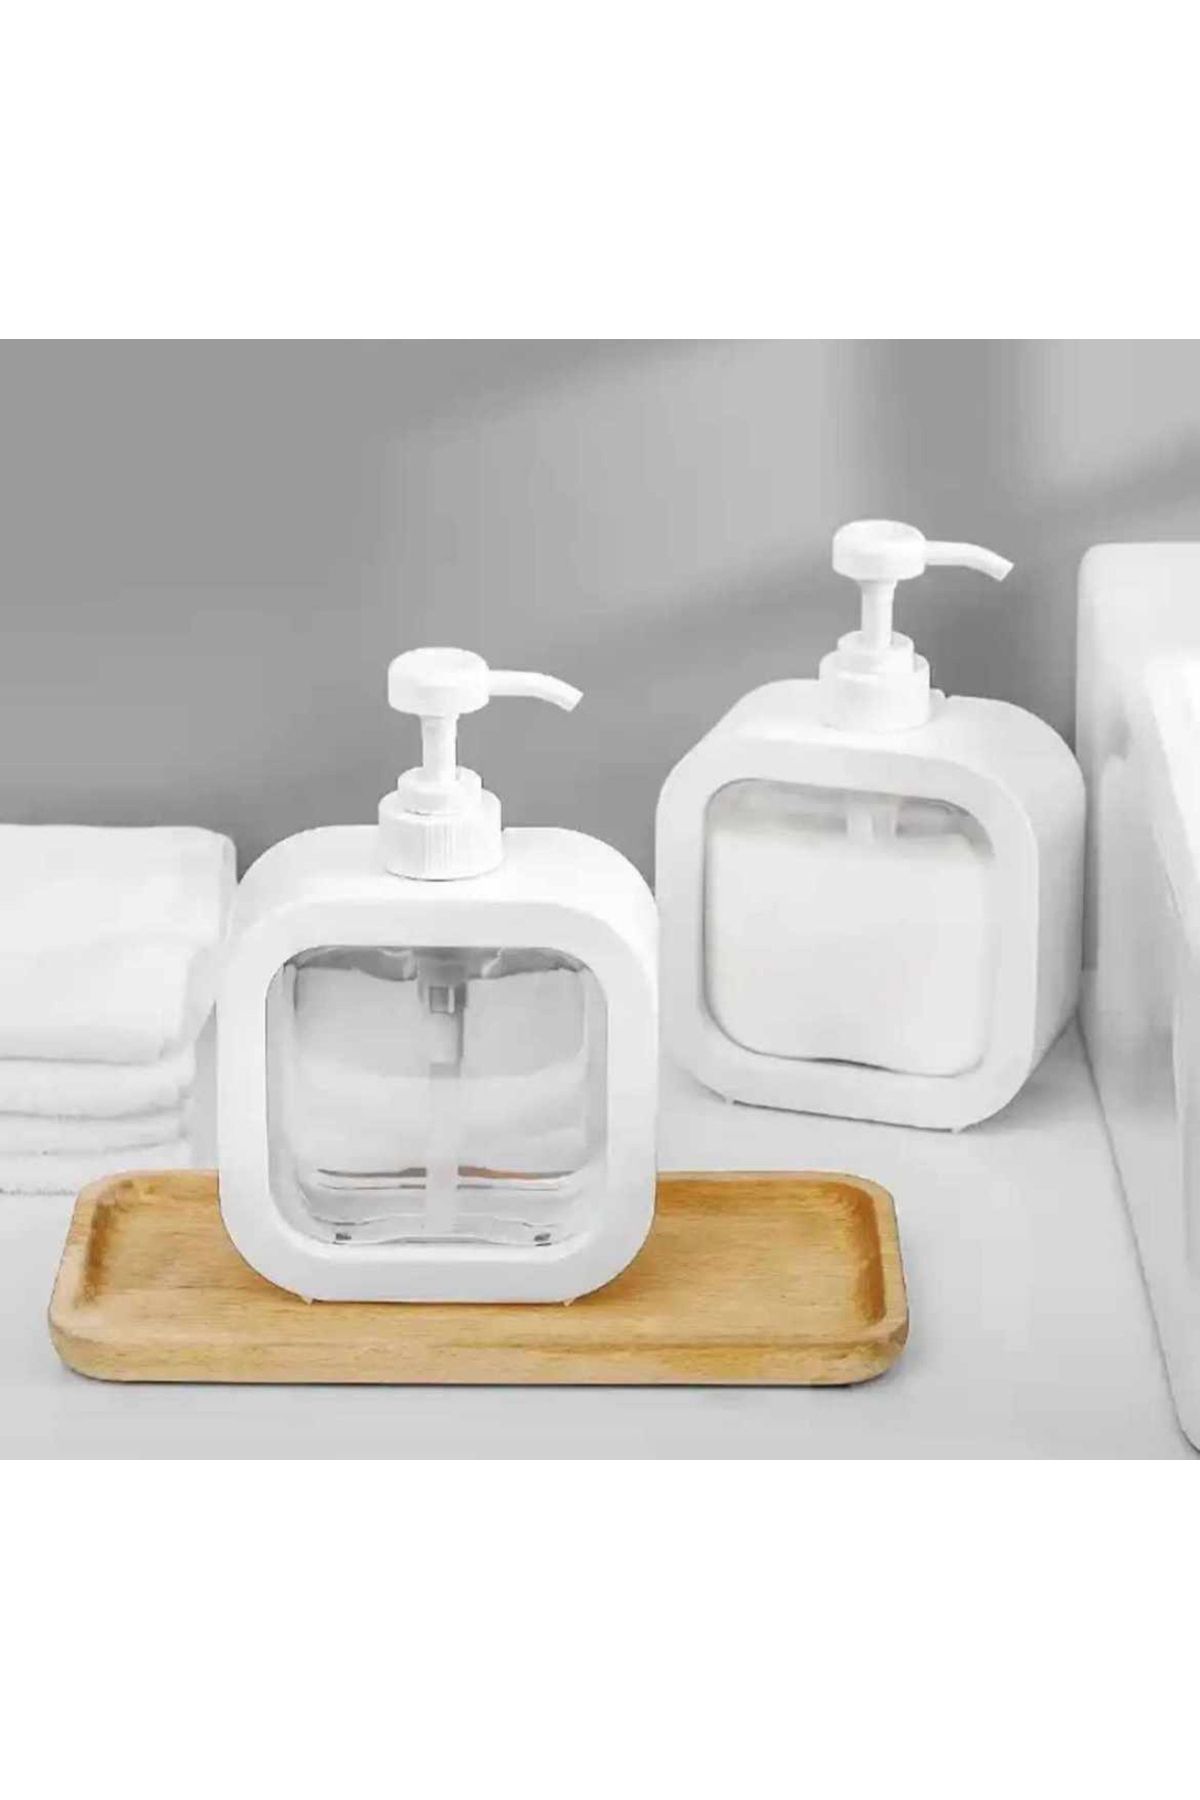 MİMOZA PARK 300 ml Tezgah Üstü Dikdörtgen Banyo Mutfak Sıvı Sabunluk | Banyo Mutfak Bulaşık Lavabo Deterjanlık